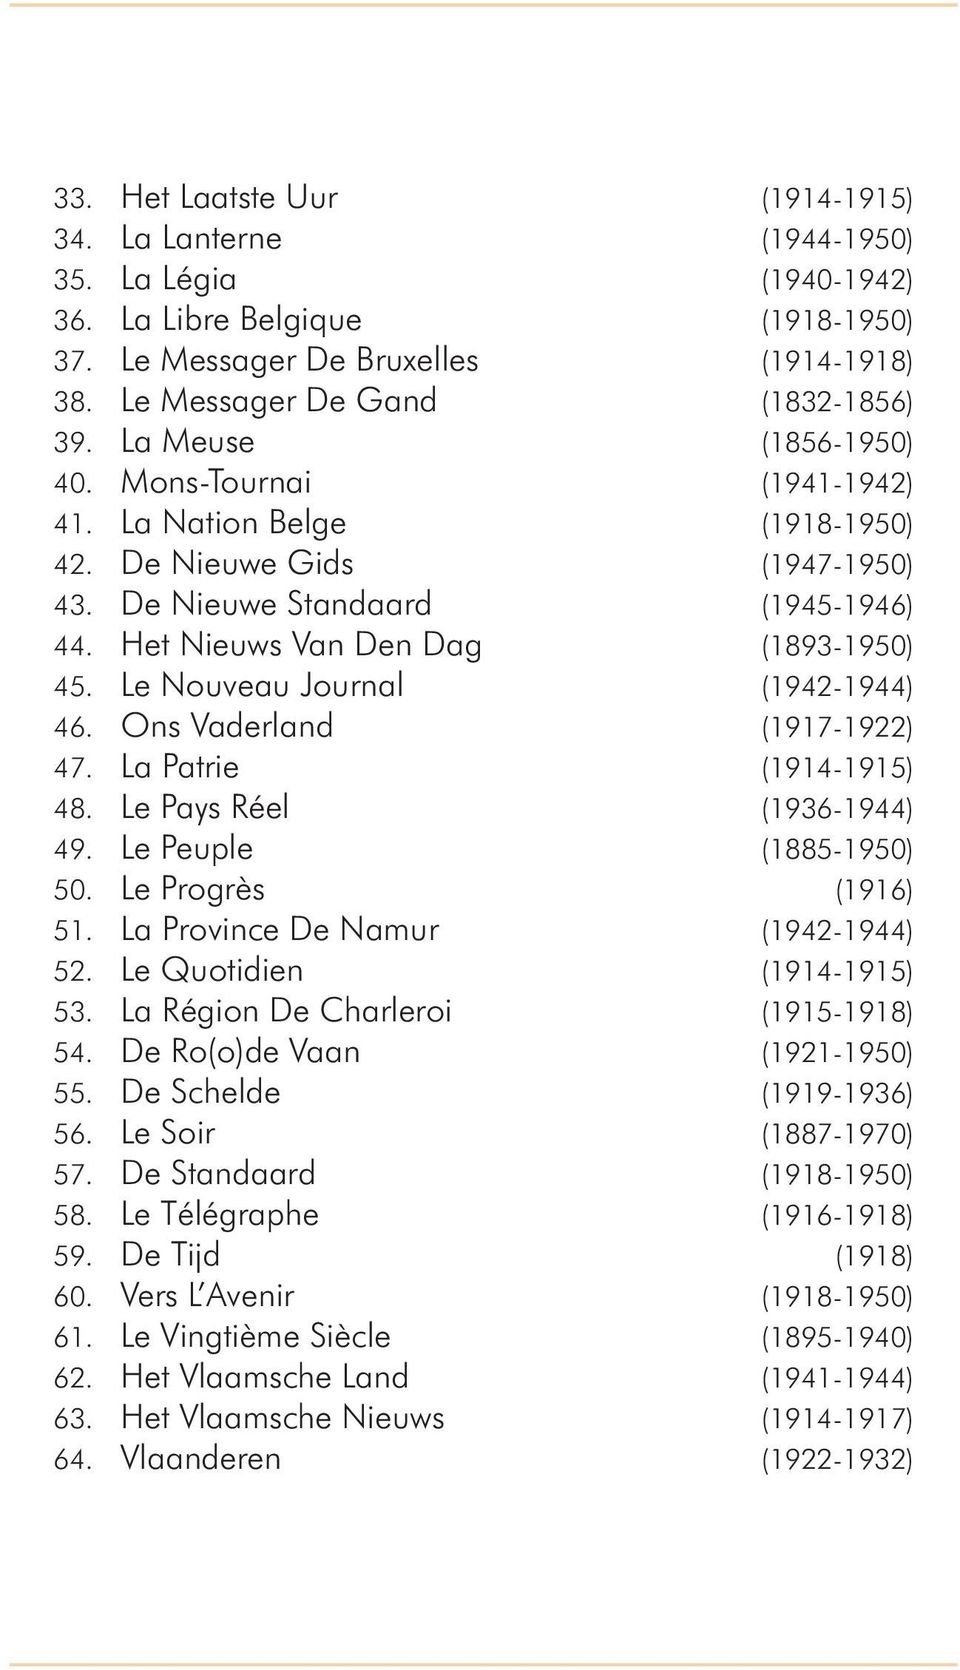 Le Nouveau Journal (1942-1944) 46. Ons Vaderland (1917-1922) 47. La Patrie (1914-1915) 48. Le Pays Réel (1936-1944) 49. Le Peuple (1885-1950) 50. Le Progrès (1916) 51.